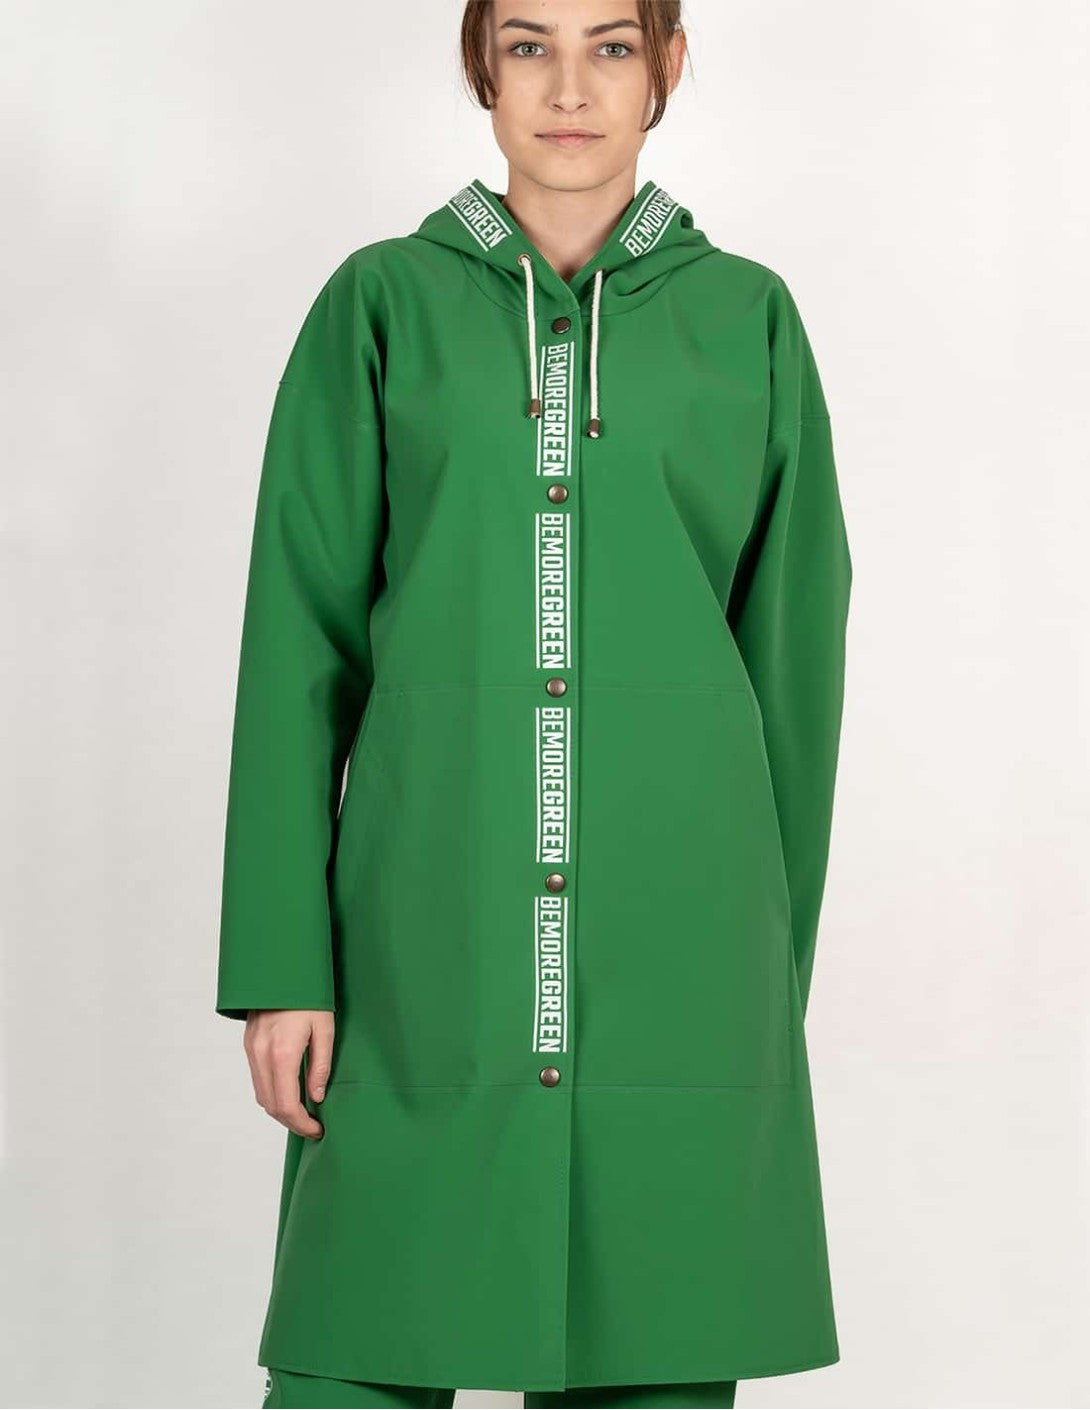 Manteau de pluie femme ¾ ECO : le look canon et écolo pour les journées pluvieuses